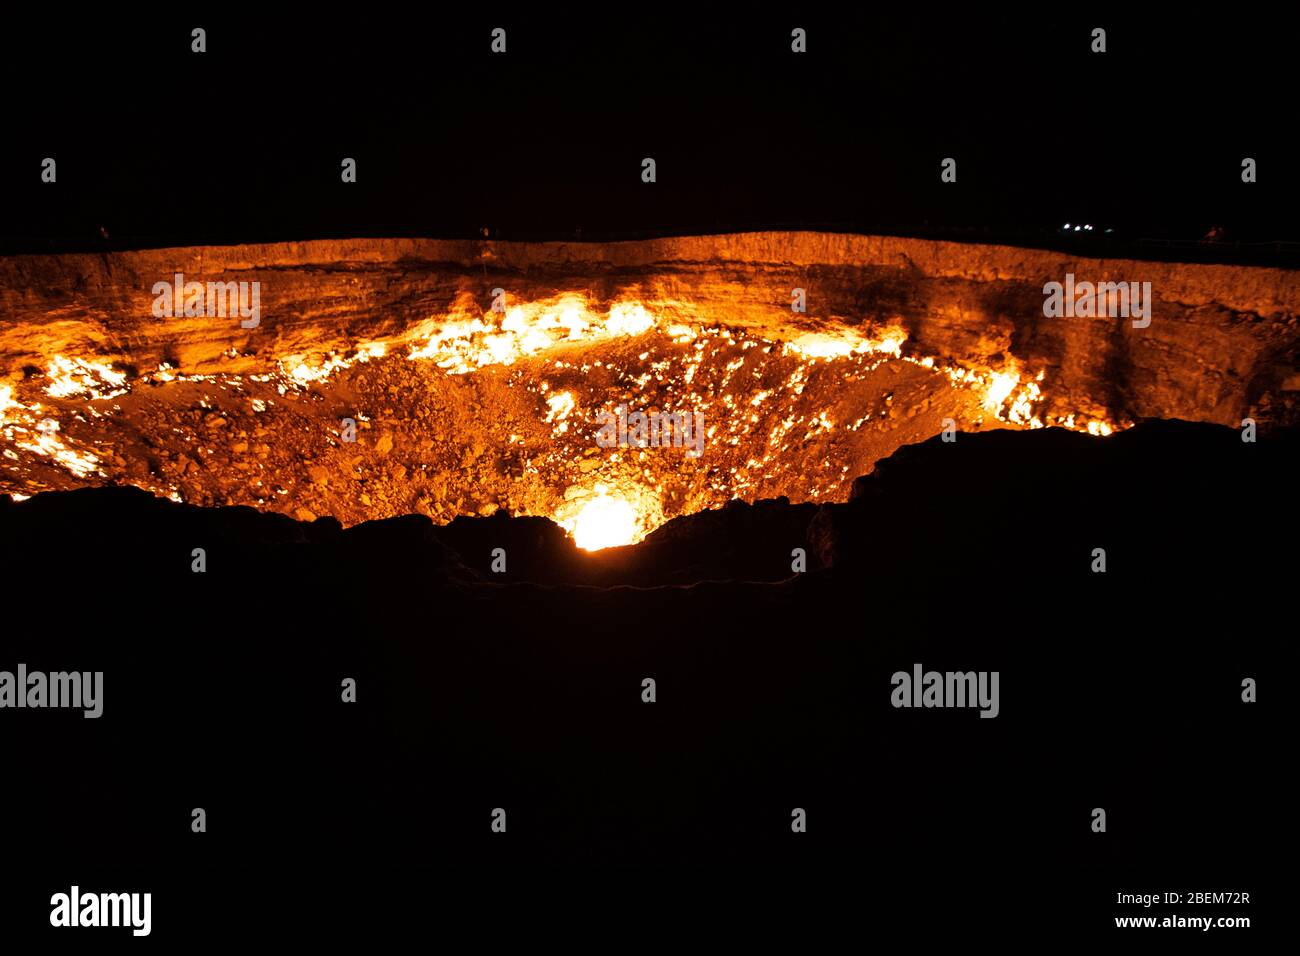 Photo de nuit du cratère Darvasa, également connu sous le nom de Doorway to Hell, le cratère à gaz flamboyant à Darvaza (Darvasa), Turkménistan Banque D'Images